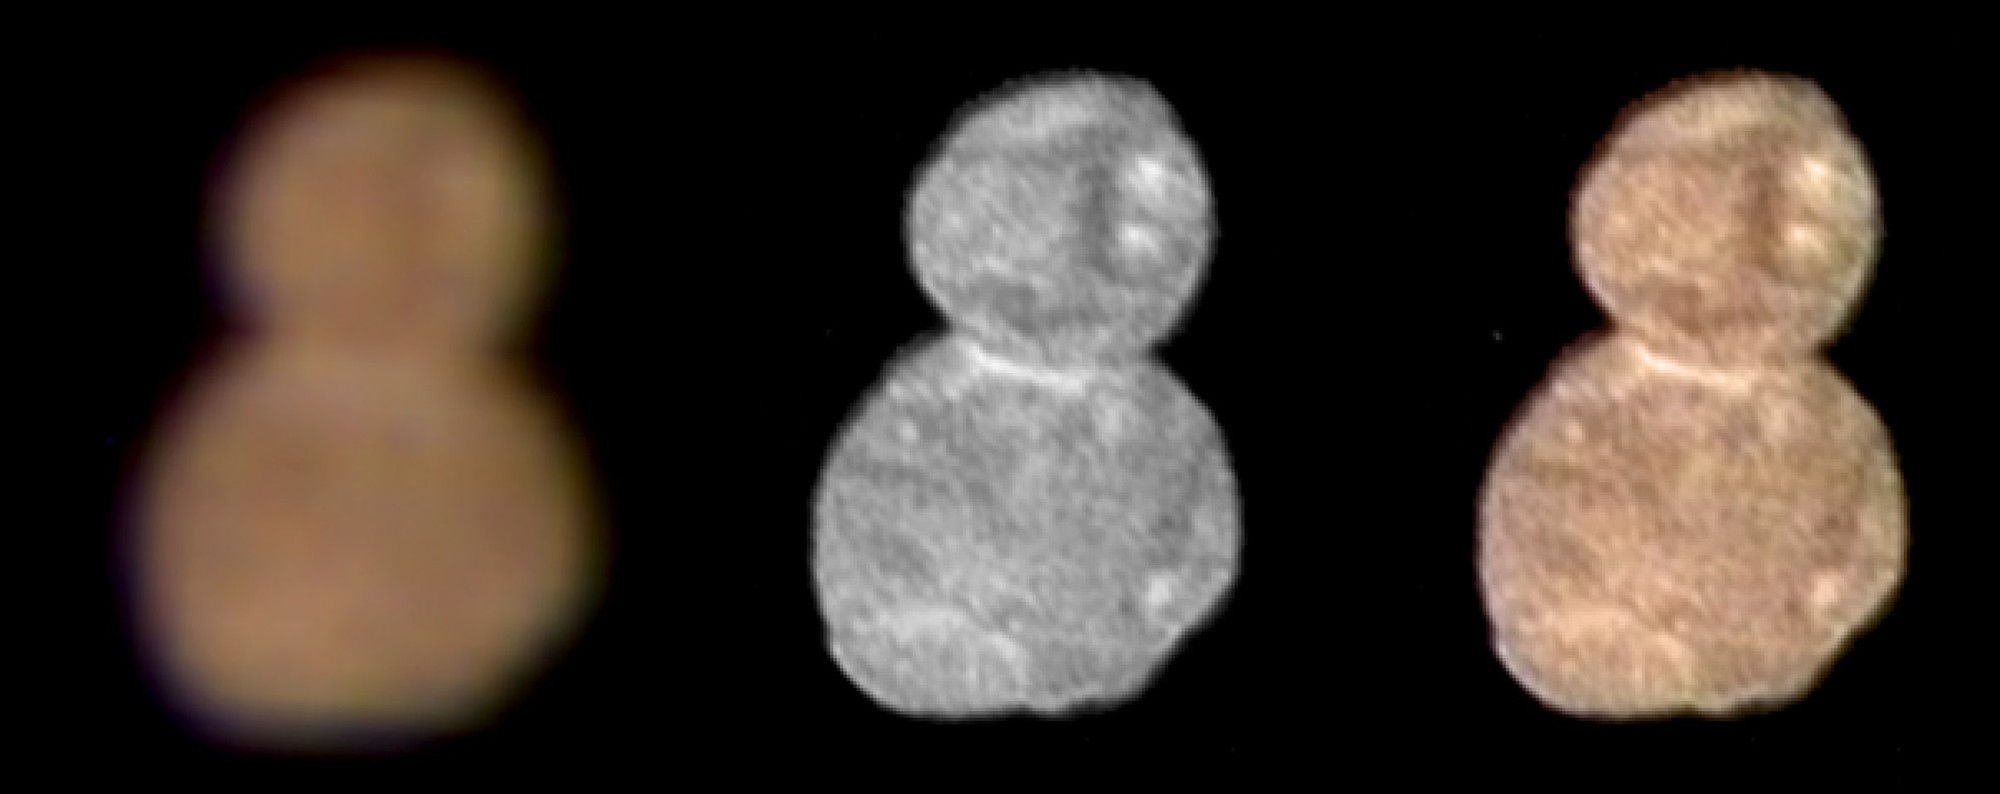 Hình ảnh chất lượng cao đầu tiên về vật thể xa nhất Hệ Mặt trời: Hình dạng của Ultima Thule đã lộ diện - Ảnh 4.